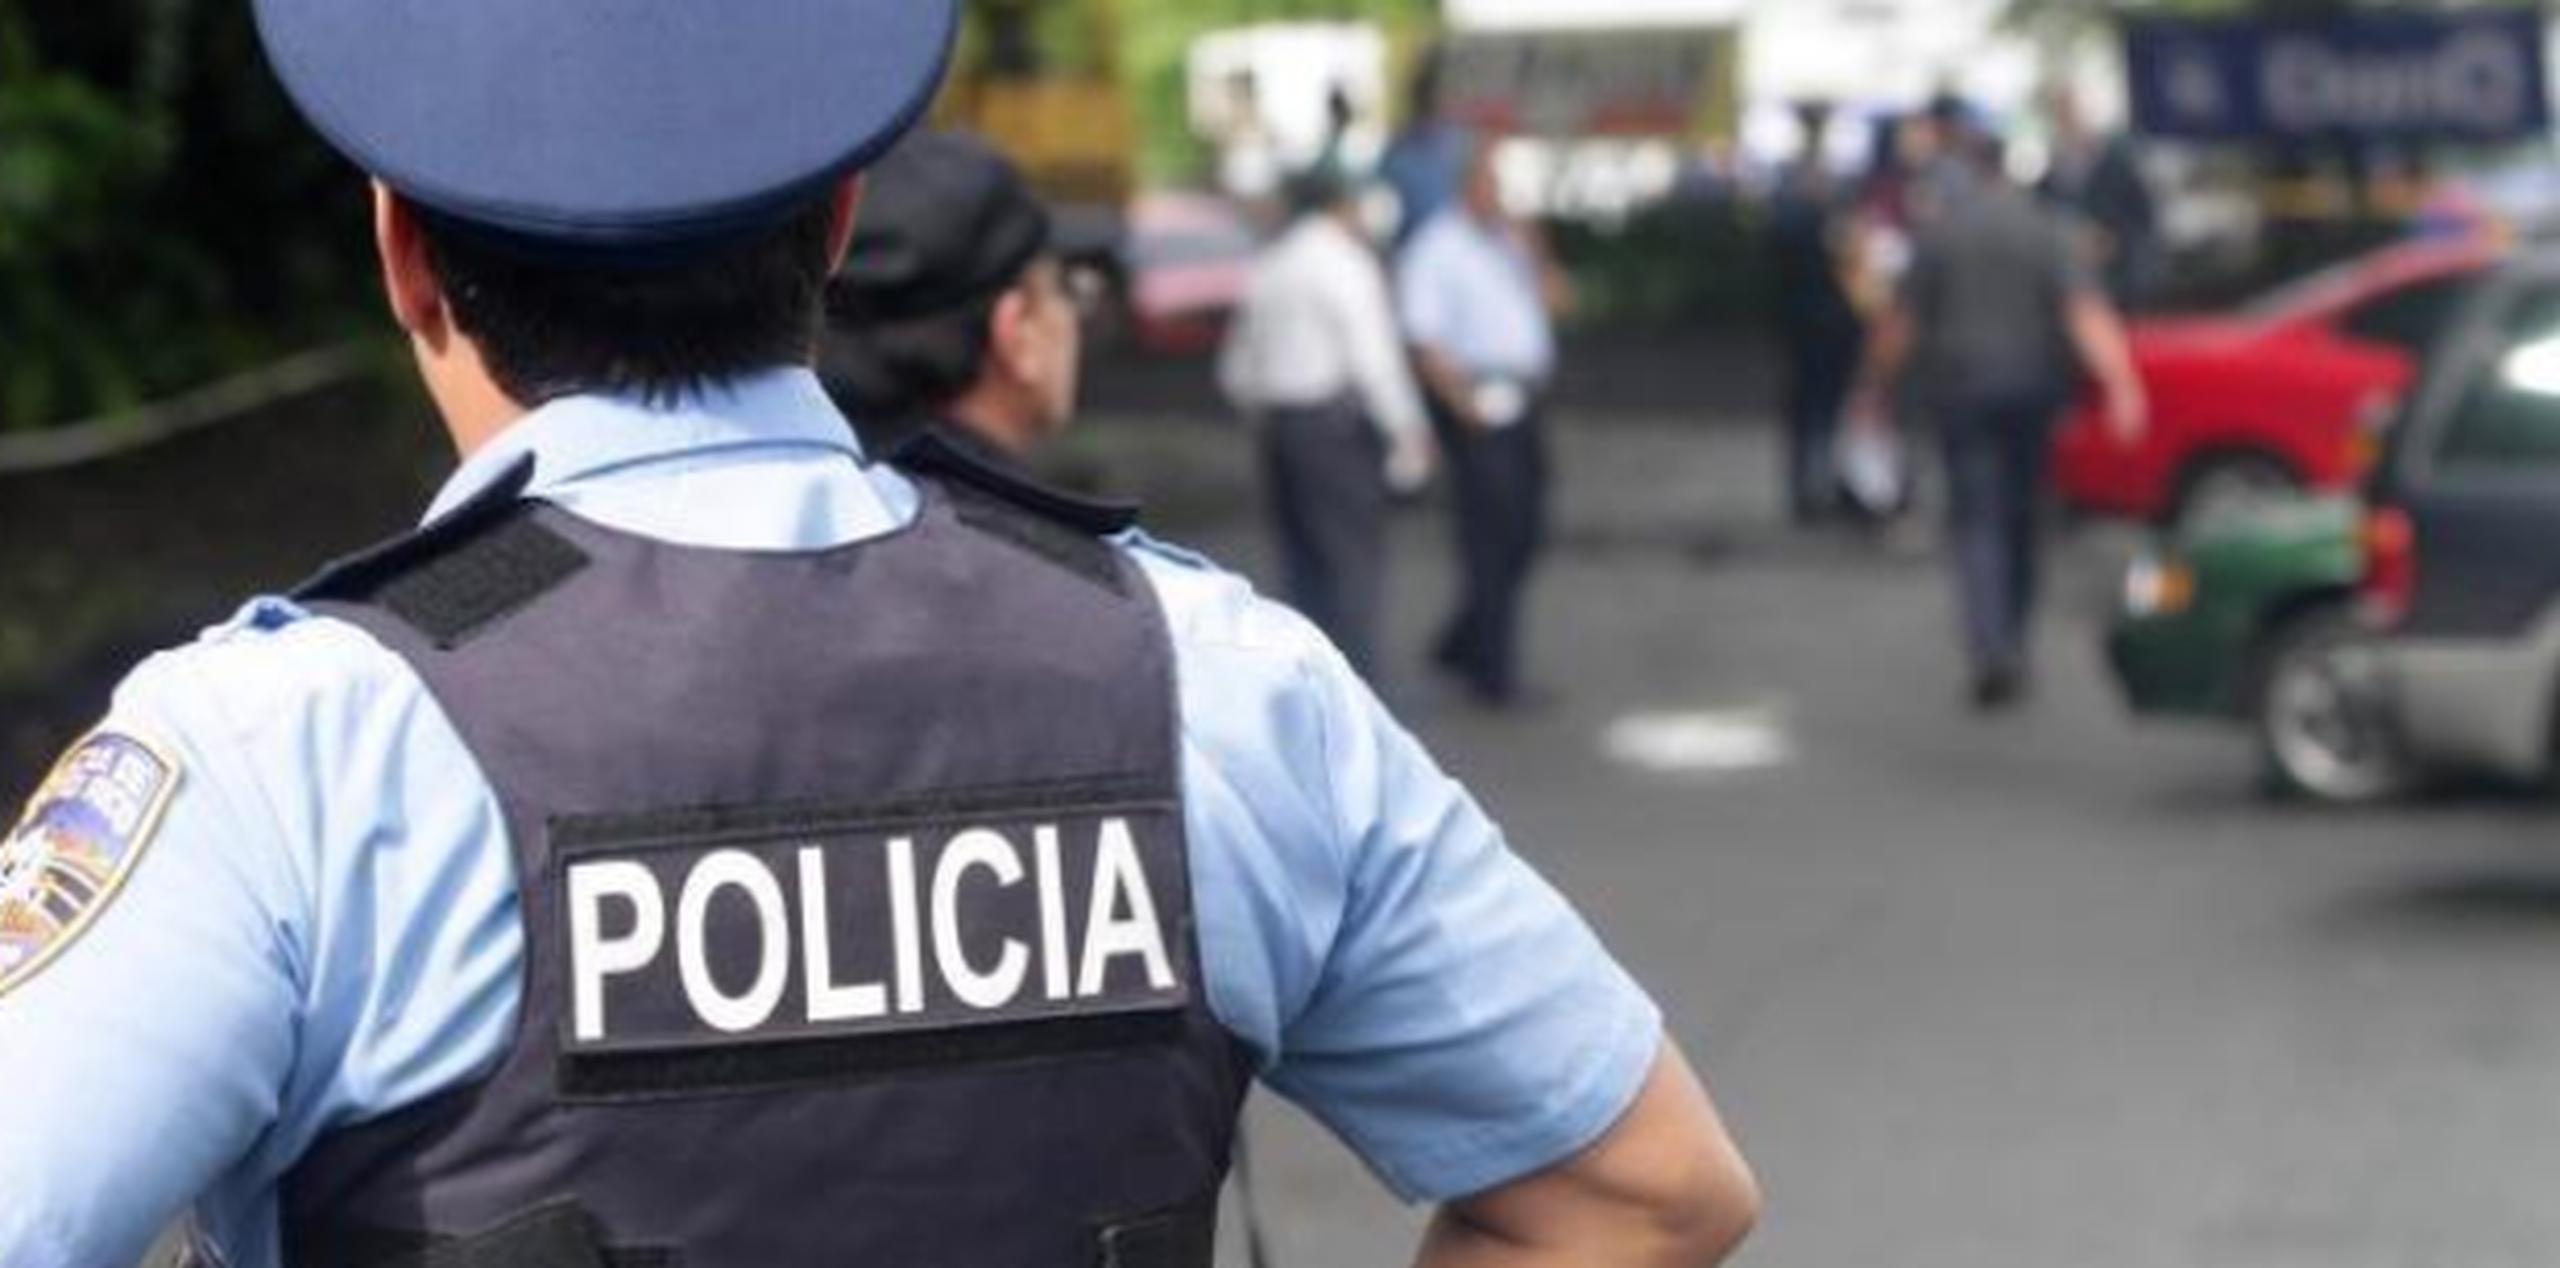 Según la policía, Noel Cruz Santos, de 35 años, golpeó a su hija ocasionándole hematomas en el ojo derecho y la boca. (Archivo)